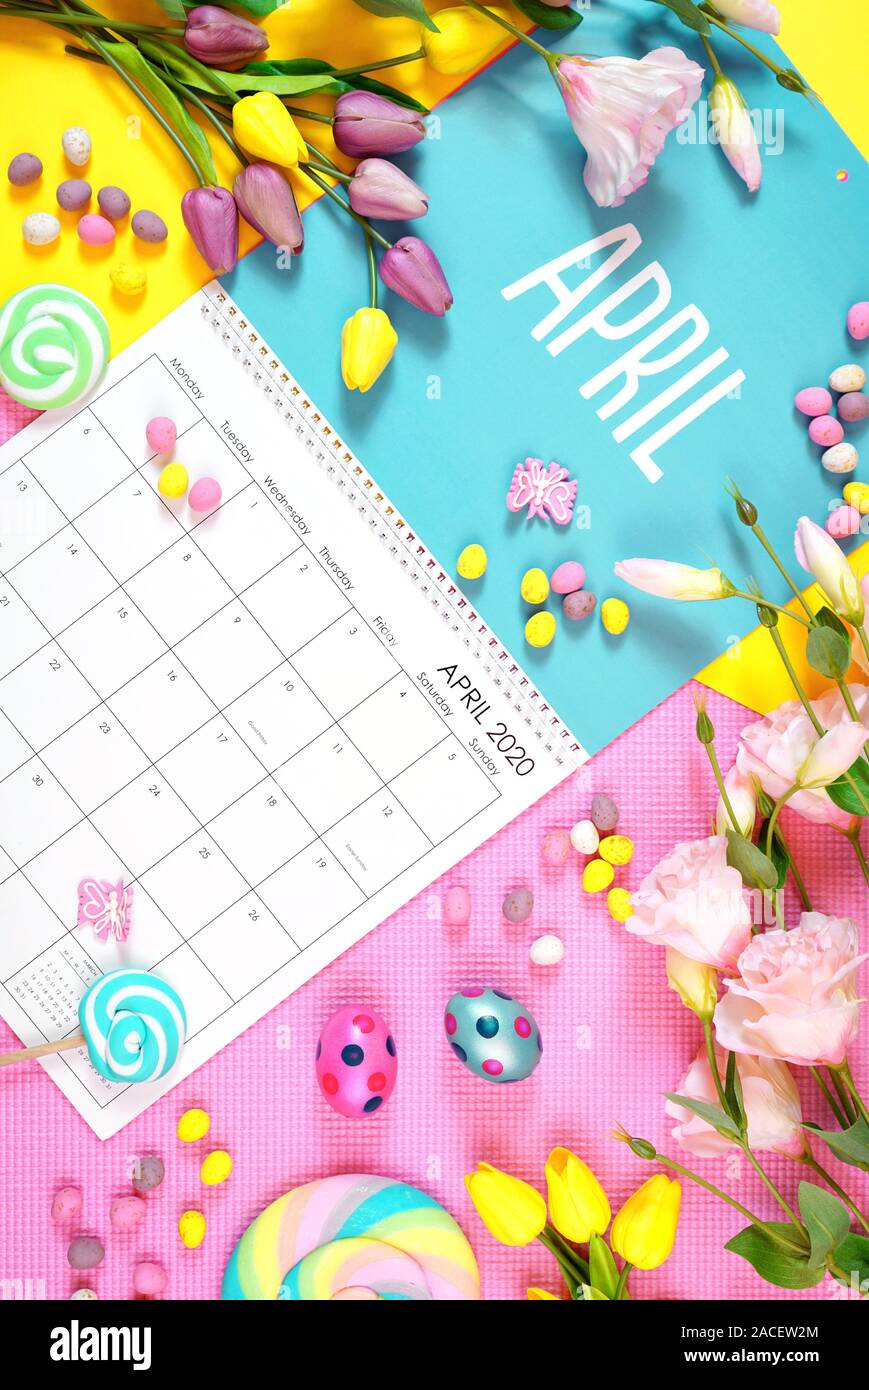 Sul trend 2020 pagina del calendario per il mese di aprile moderni laici piatta con cucina di stagione, caramelle e decorazioni colorate in popular colori pastello. Vertic Foto Stock